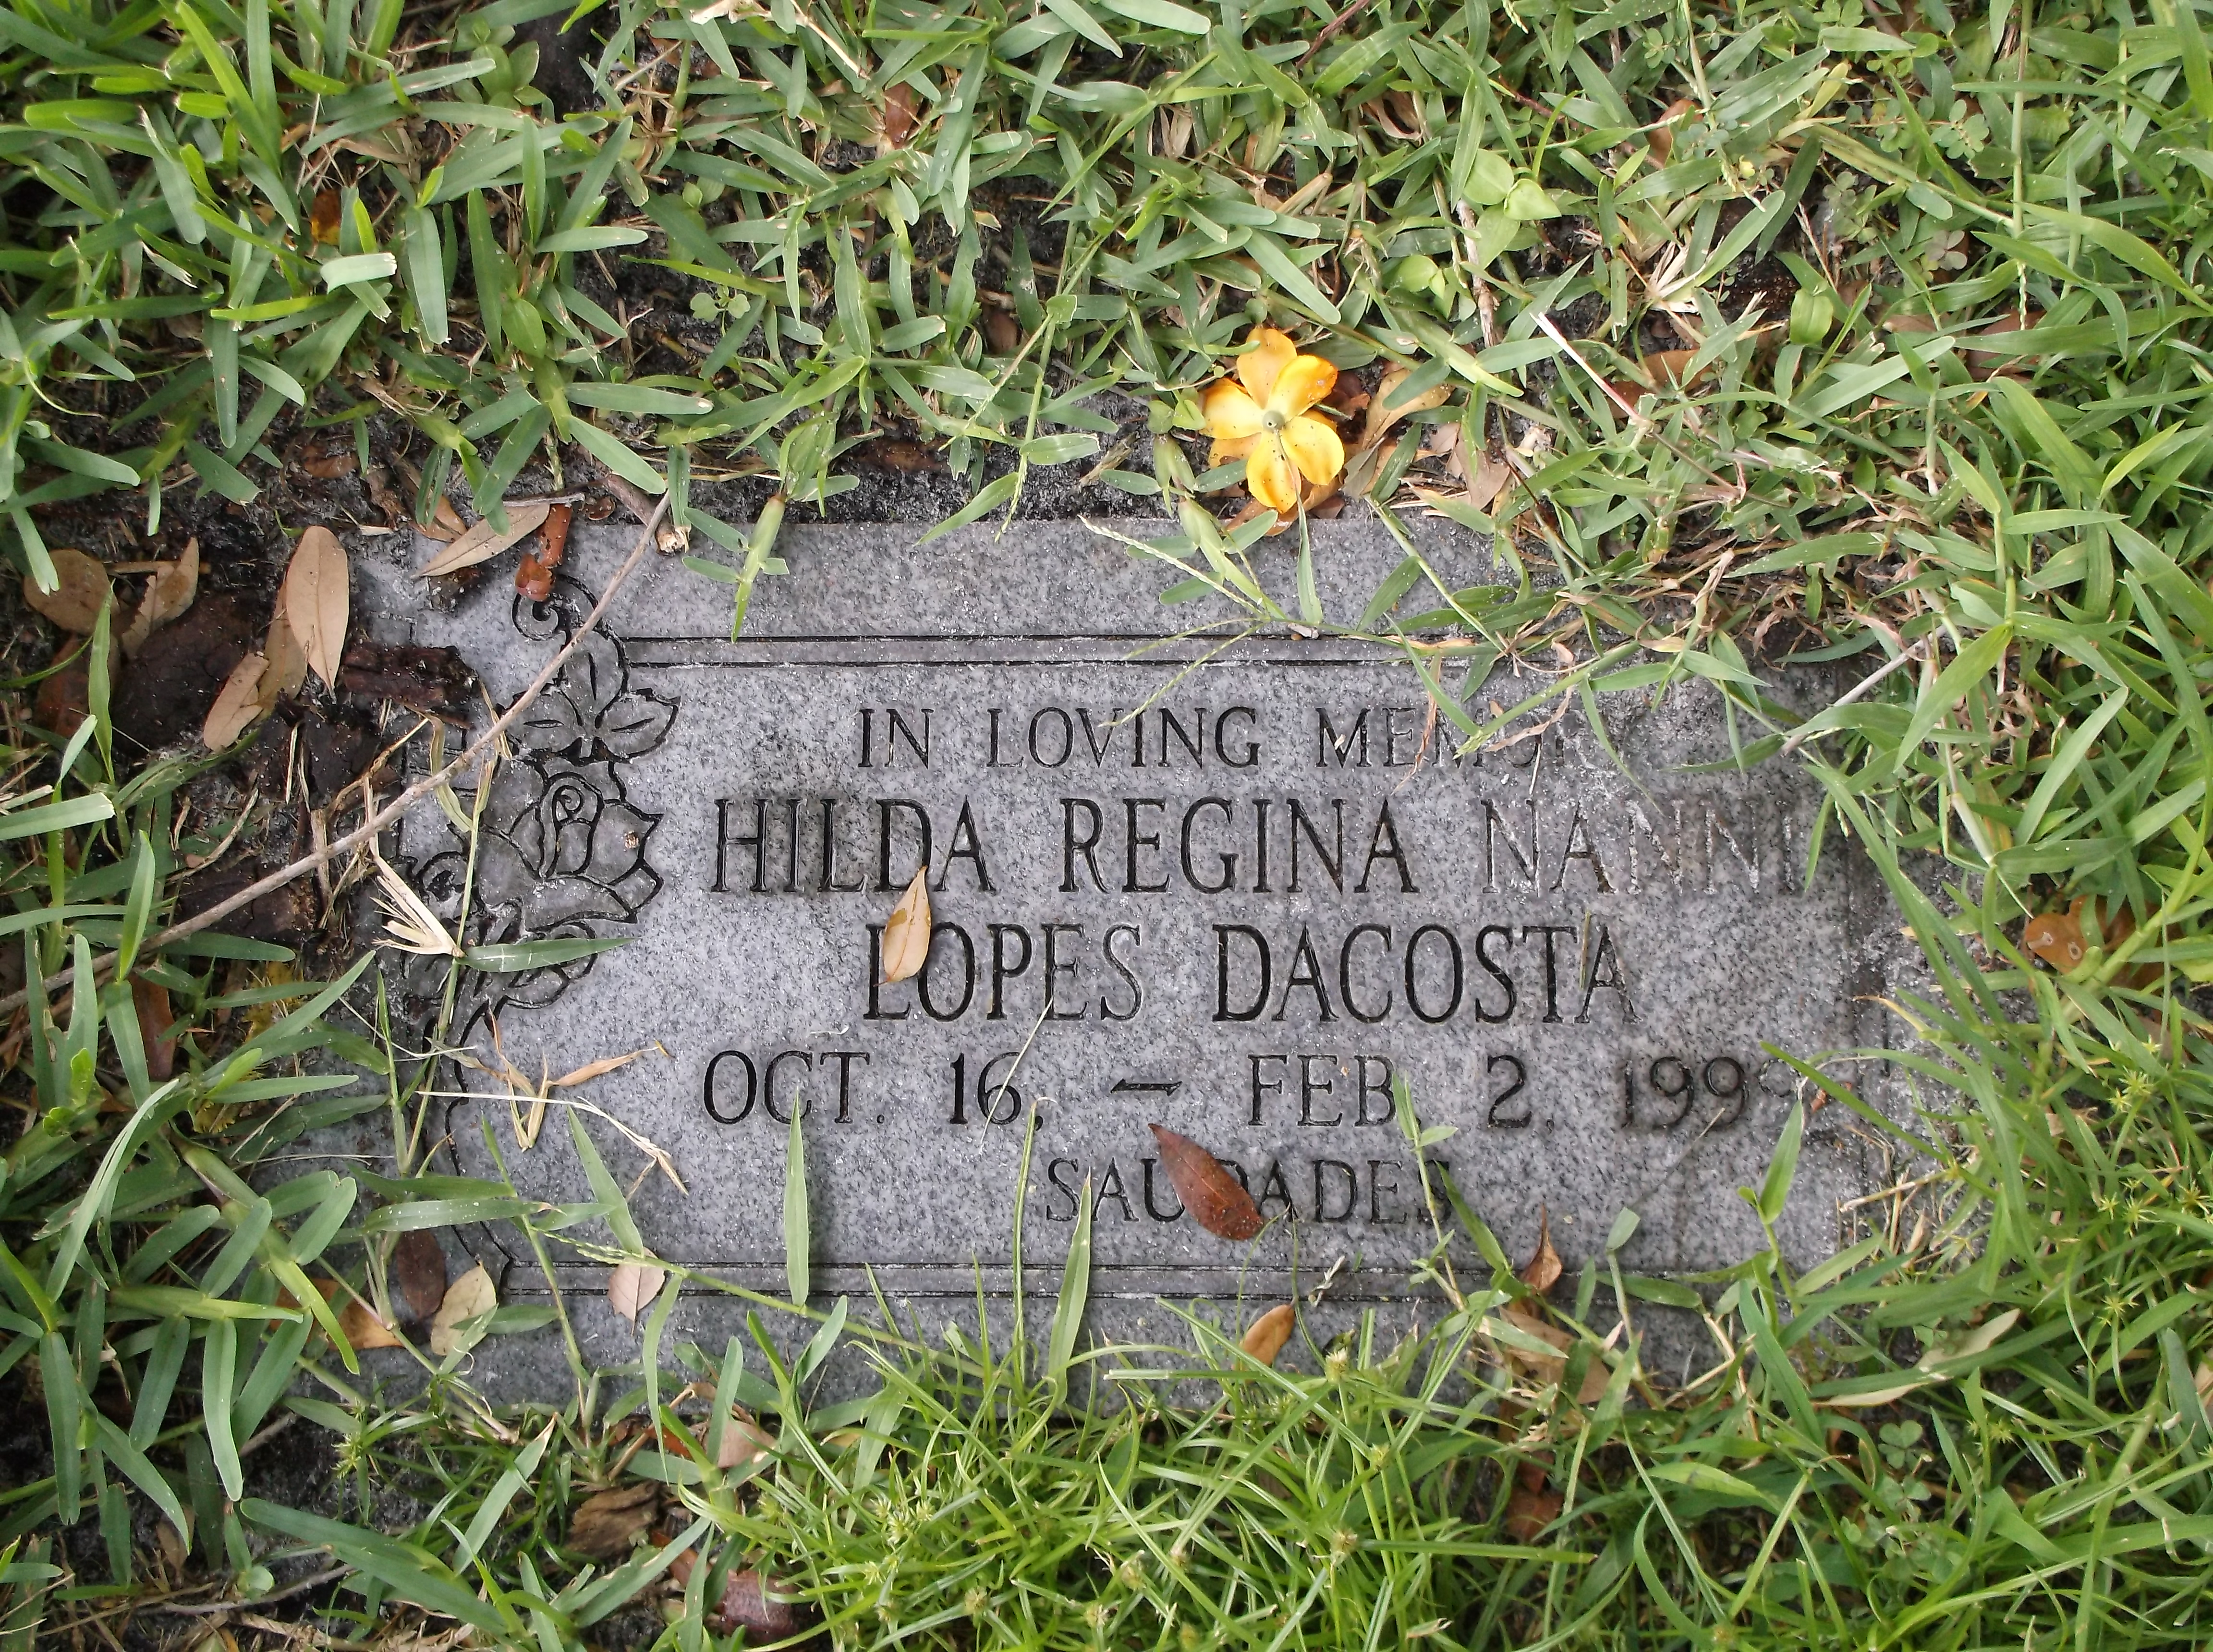 Hilda Regina Nanni Lopes Dacosta